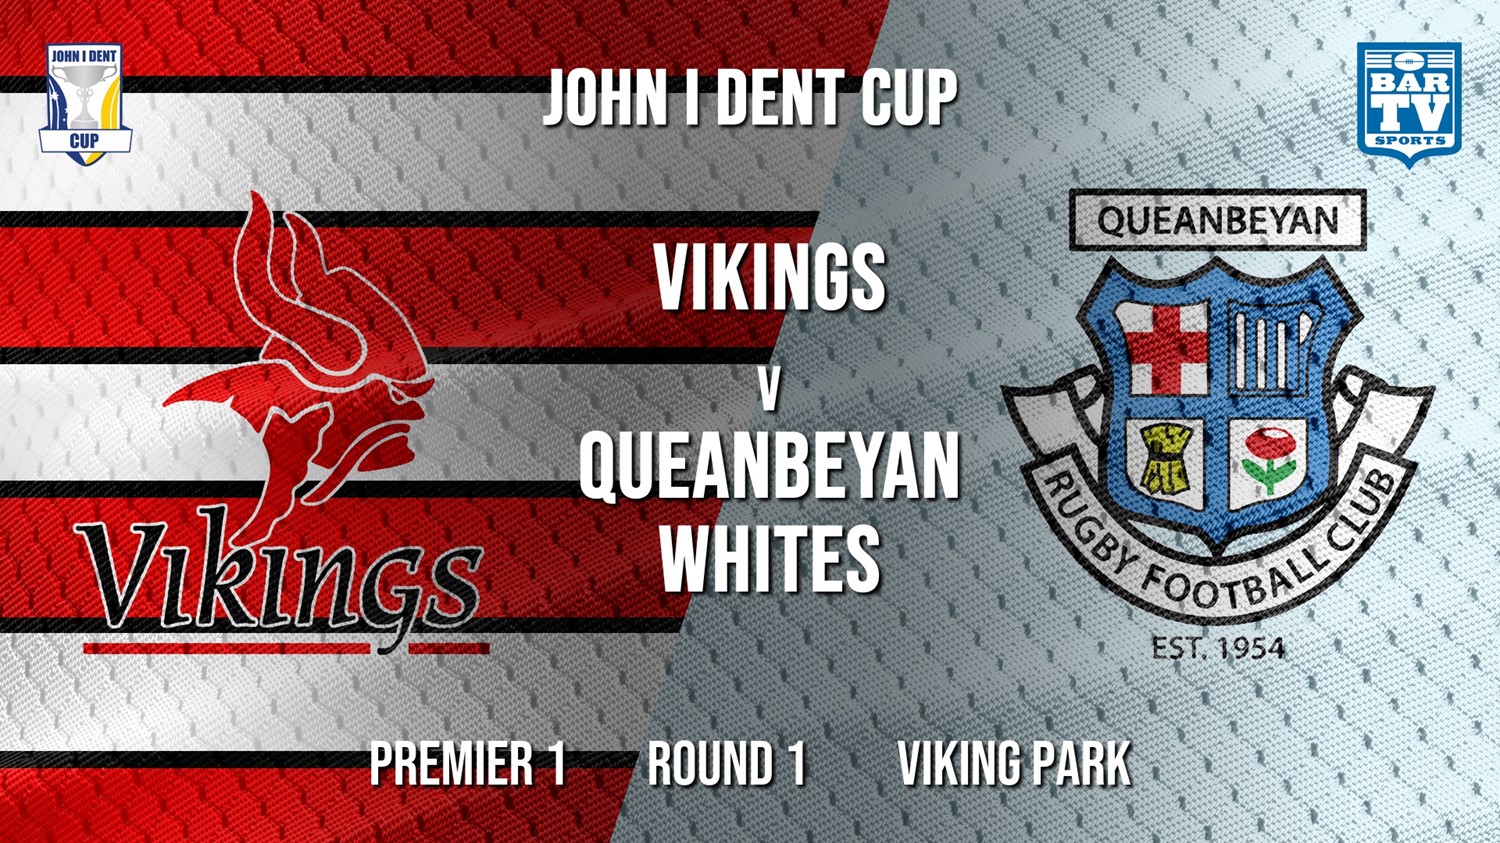 John I Dent Round 1  - Premier 1 - Tuggeranong Vikings v Queanbeyan Whites Minigame Slate Image